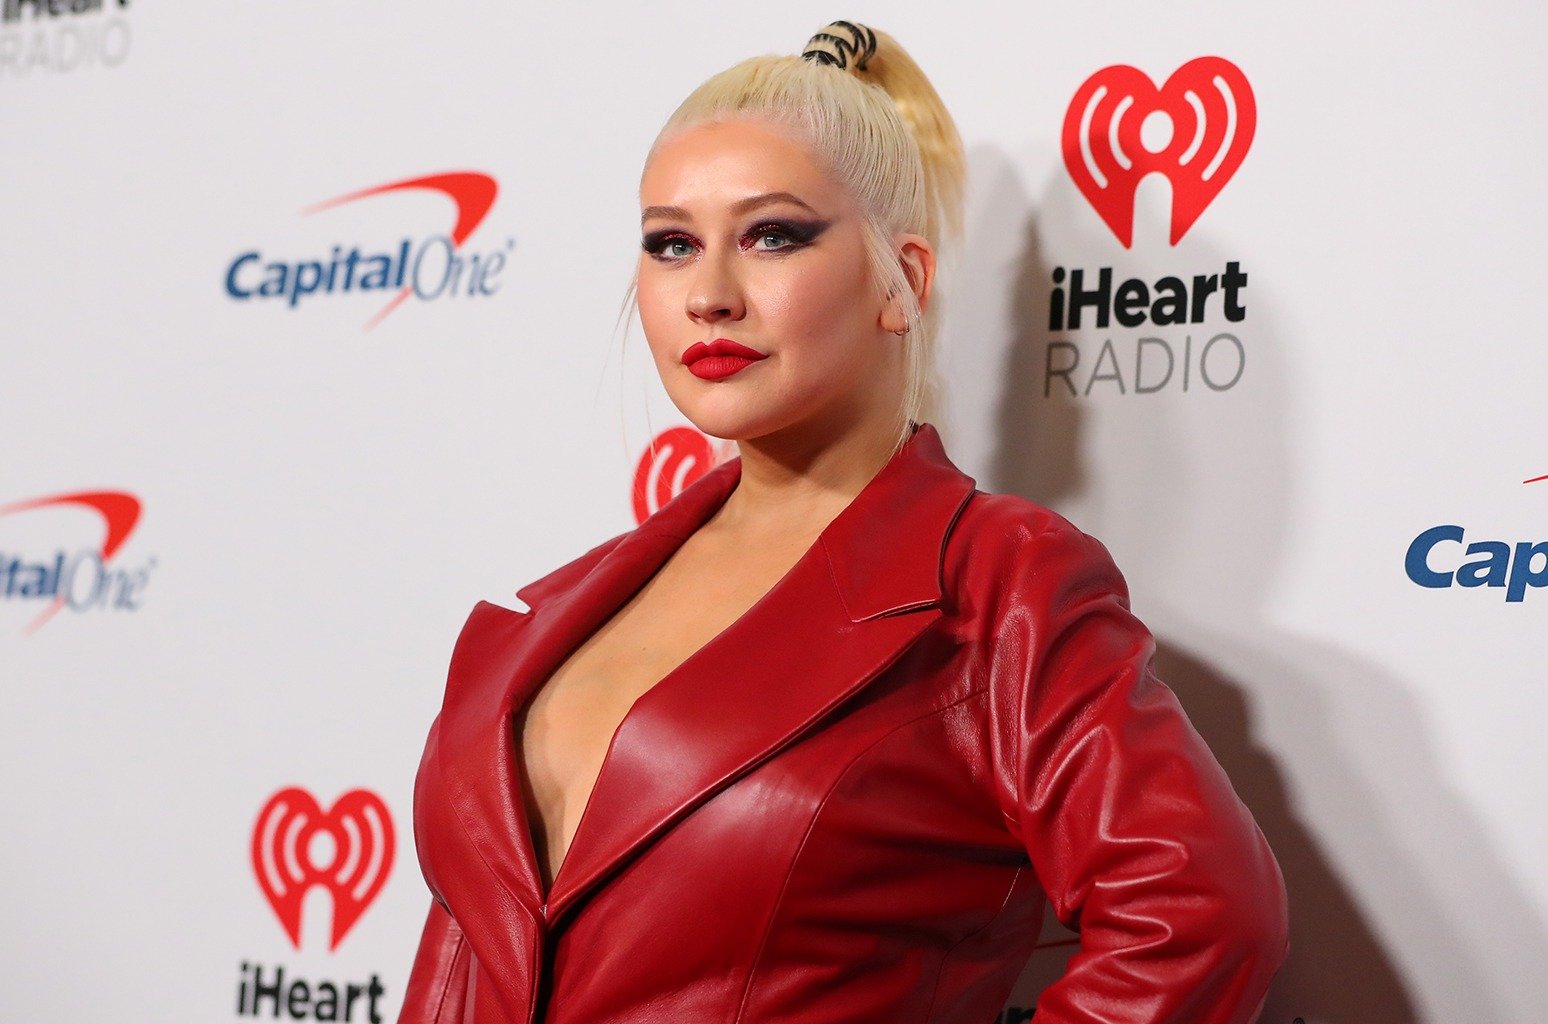 Les confessions sexuals més privades de Christina Aguilera surten a la llum: No és com imagines